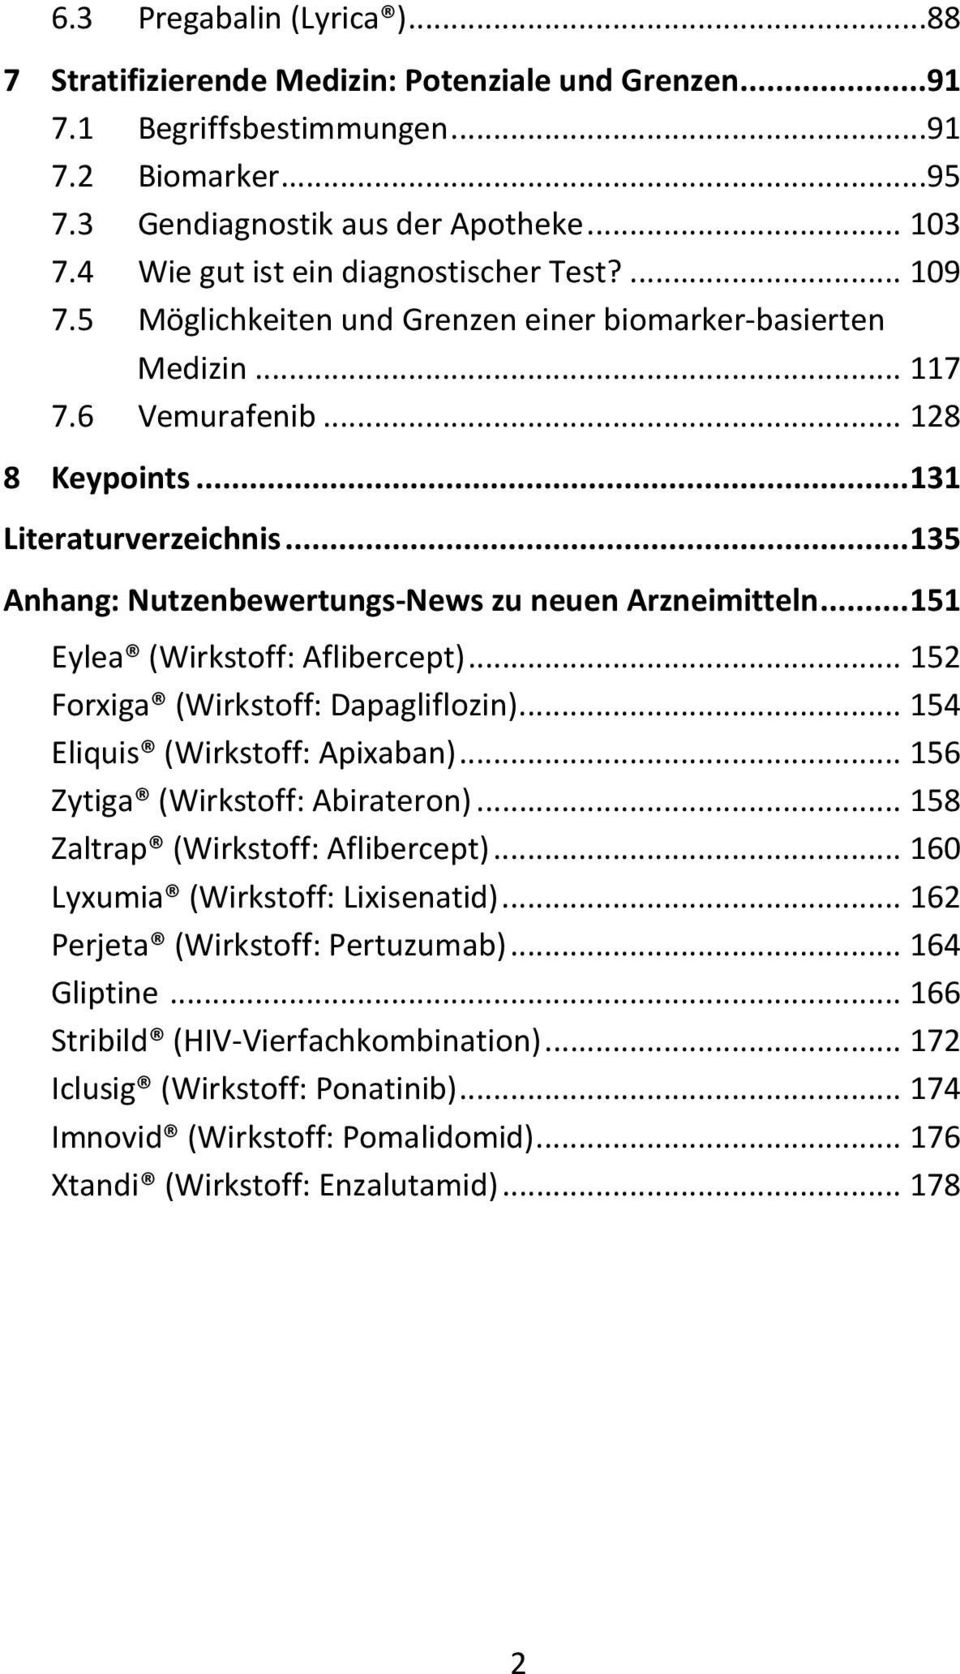 .. 135 Anhang: Nutzenbewertungs-News zu neuen Arzneimitteln... 151 Eylea (Wirkstoff: Aflibercept)... 152 Forxiga (Wirkstoff: Dapagliflozin)... 154 Eliquis (Wirkstoff: Apixaban).